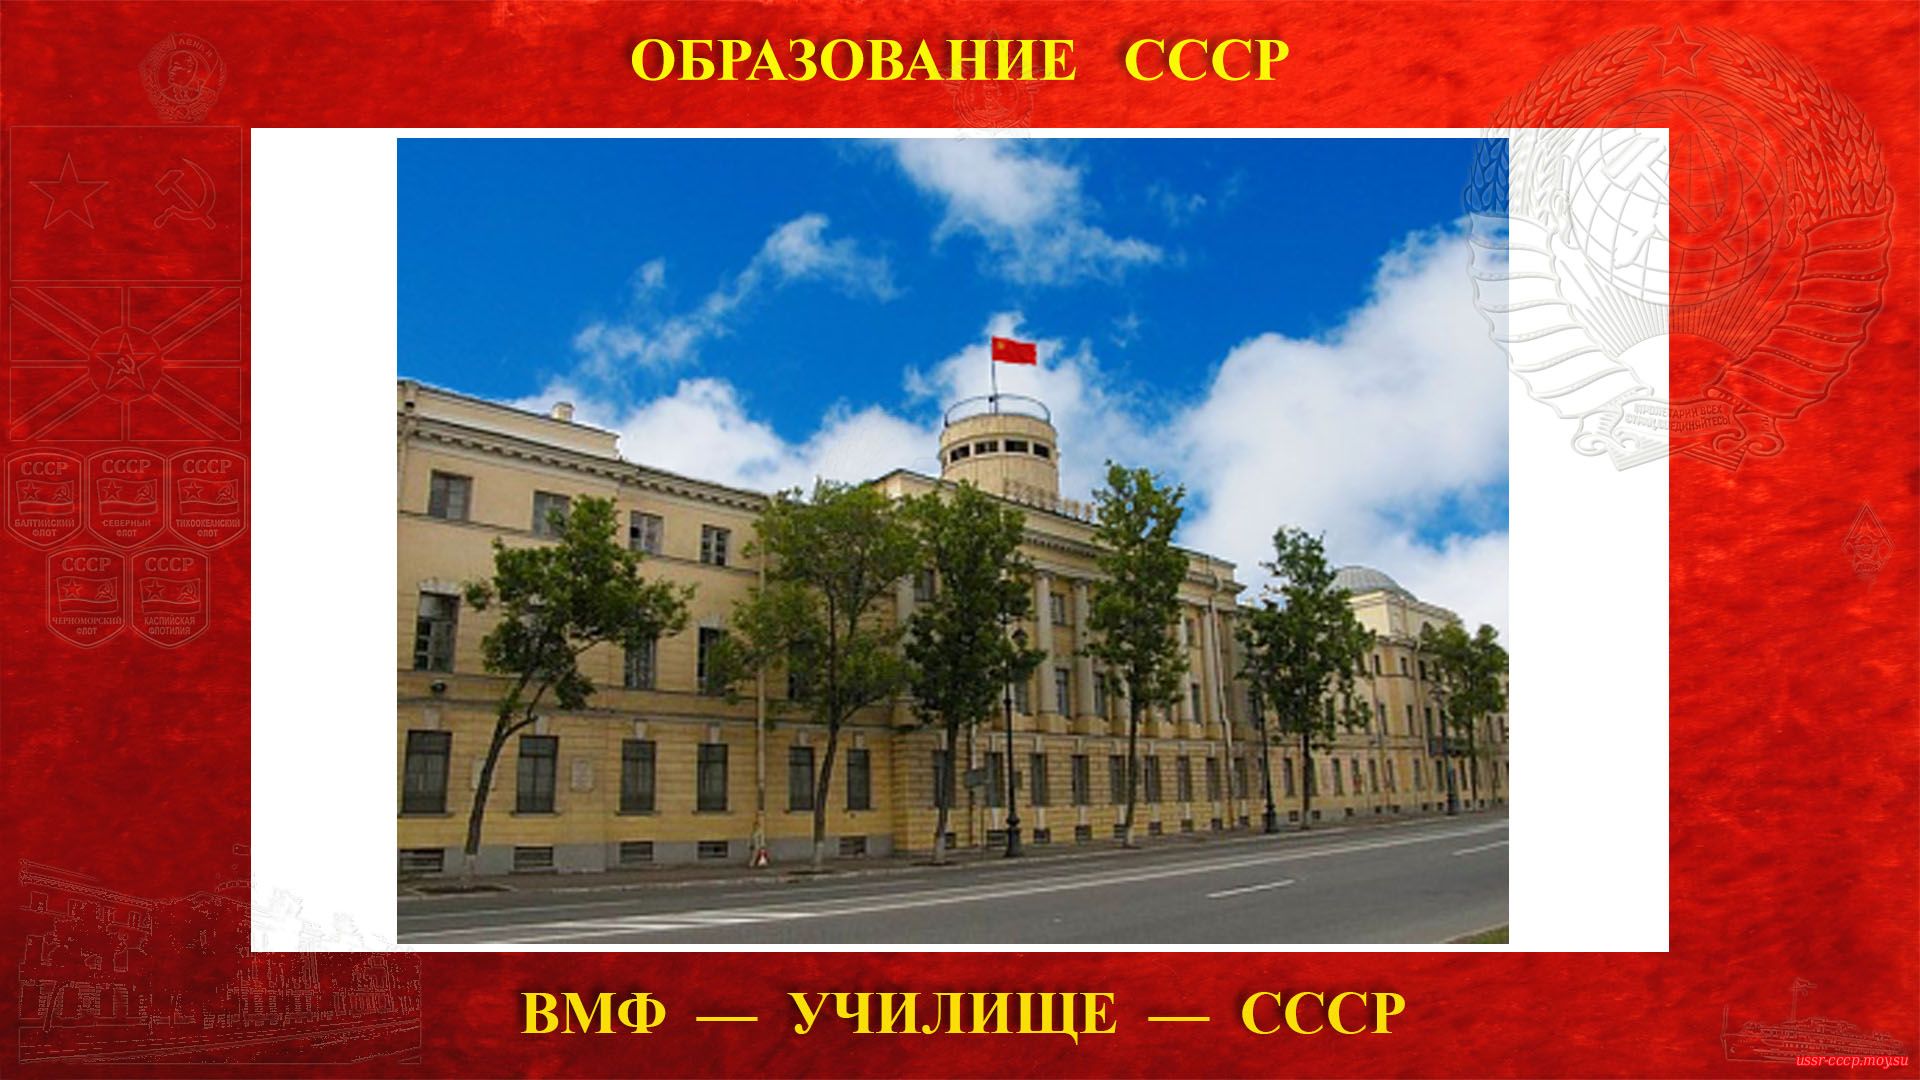 Высшее военно-морское училище имени М. В. Фрунзе (07.01.1926 — 25.12.1991)